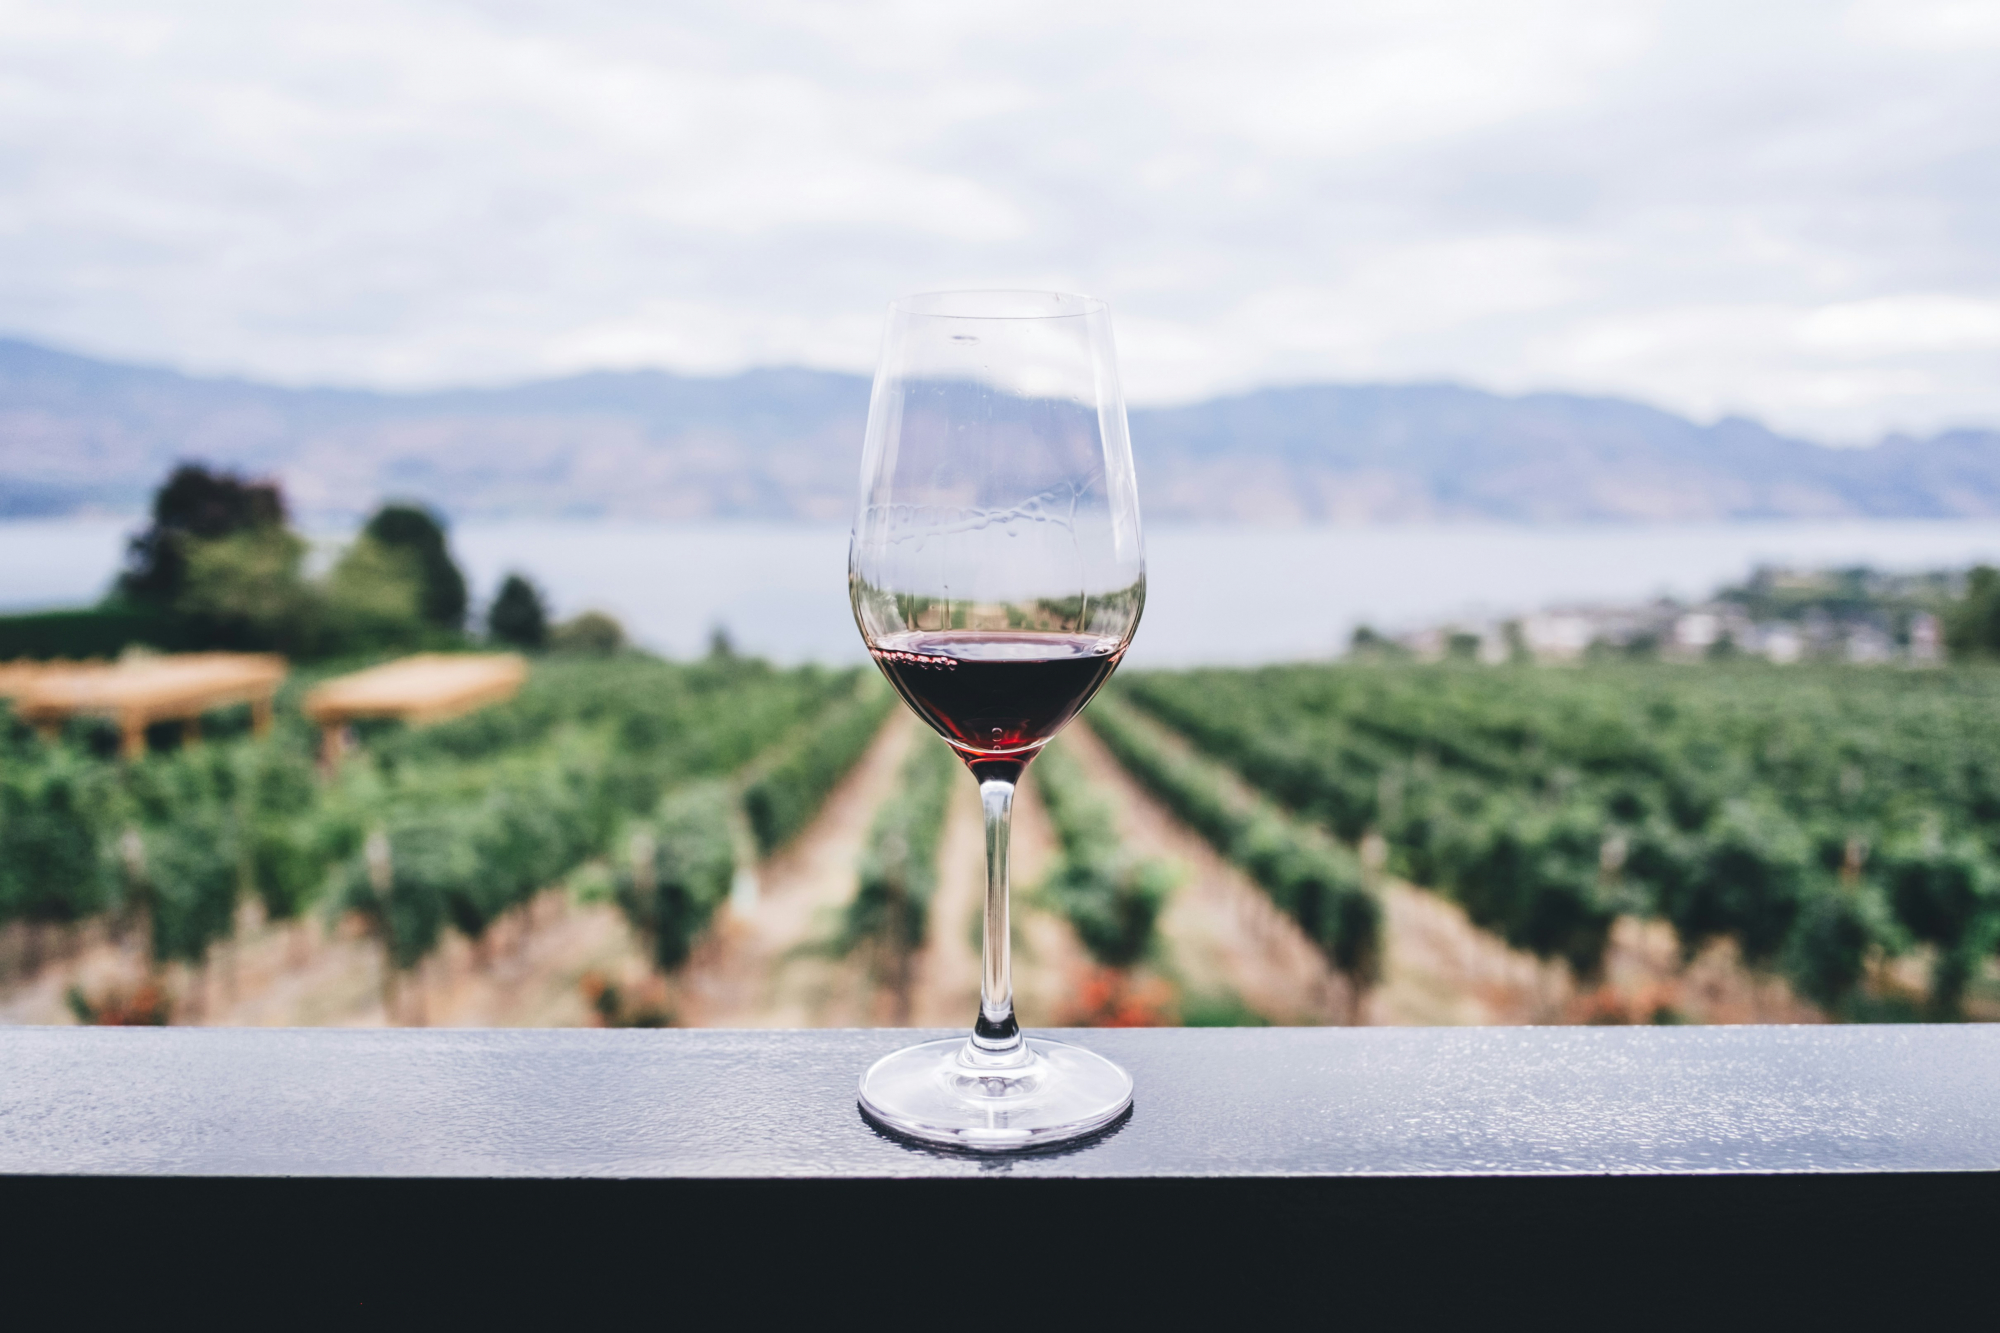 découvrez une sélection de vins rouges exquis pour accompagner vos repas, provenant des meilleurs vignobles et offrant une expérience sensorielle unique.